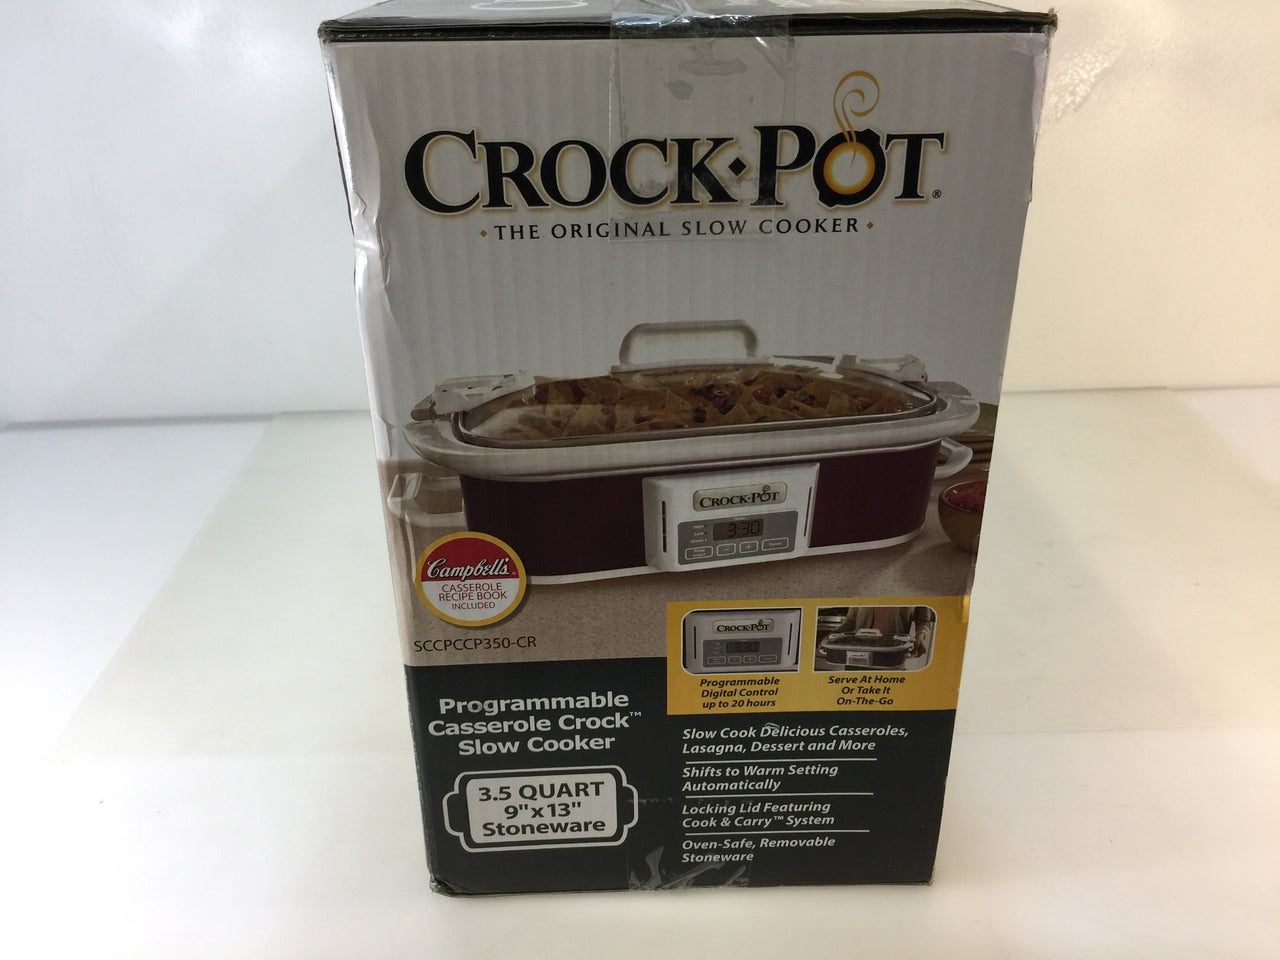 CrockPot 3.5 Quart Programmable Casserole Crock Slow Cooker